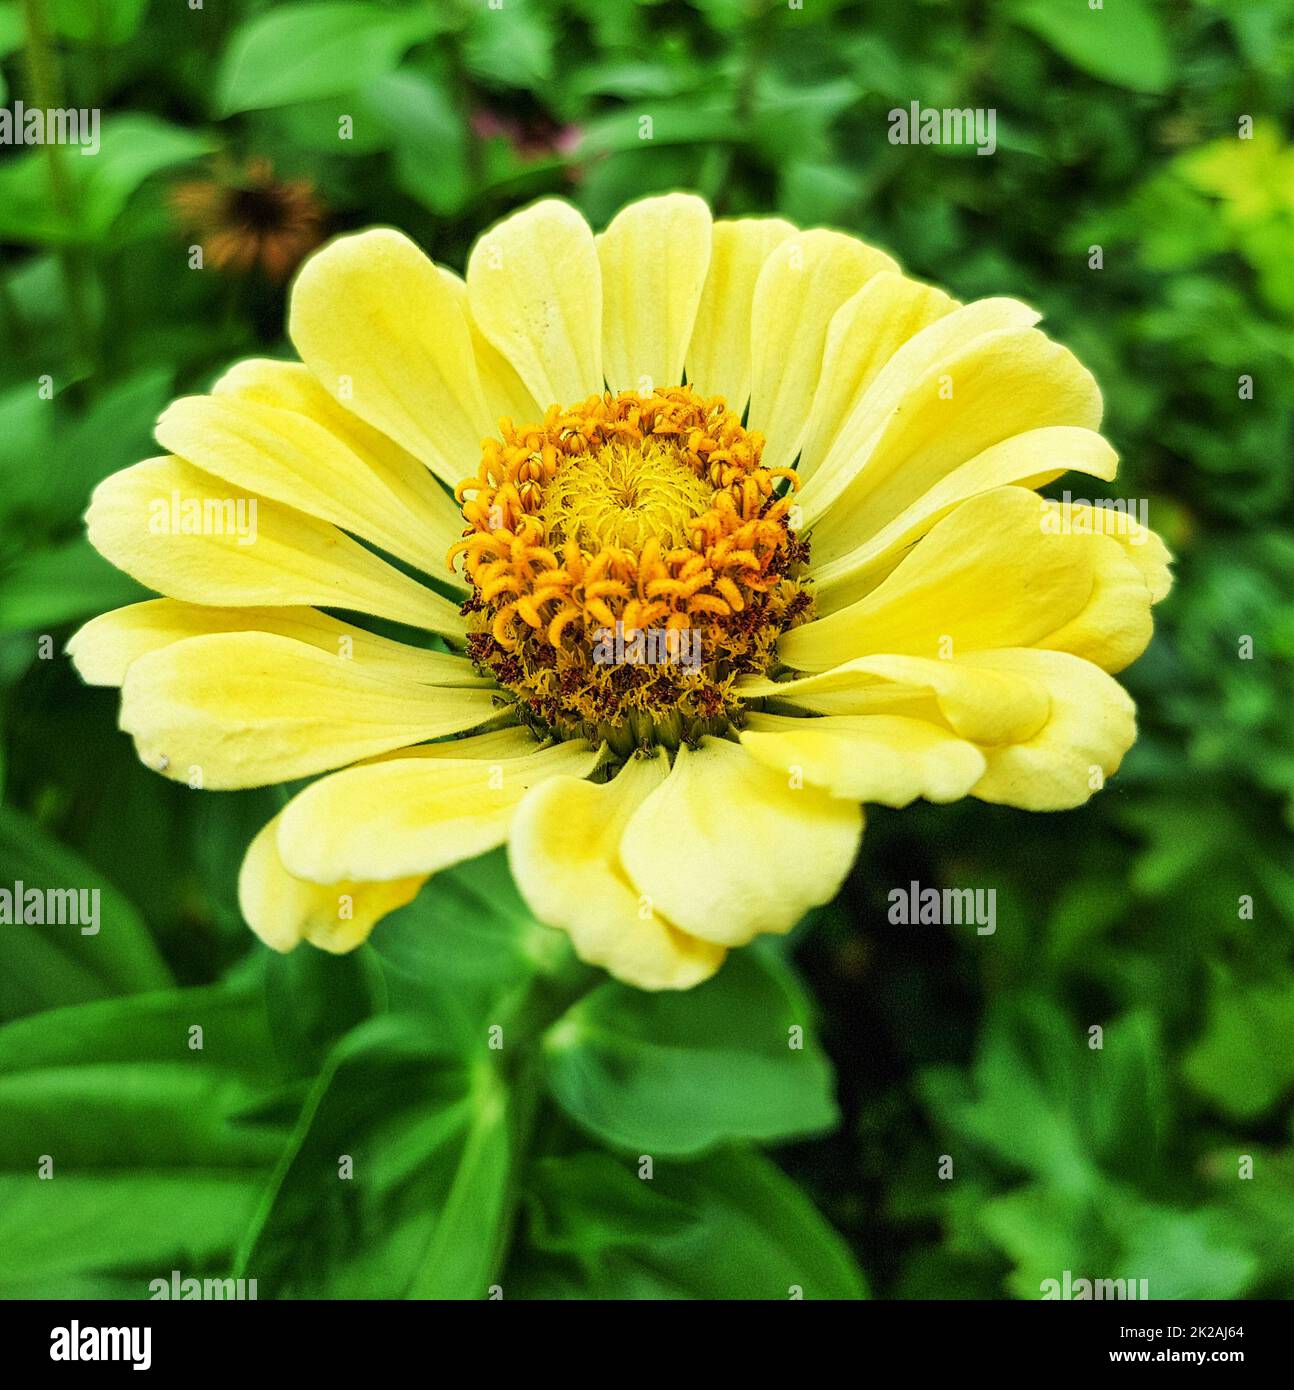 Nahaufnahme einer gelben Zinnia-Blume in einem Garten mit einem unscharfen Hintergrund aus grünen Blättern, Draufsicht Stockfoto